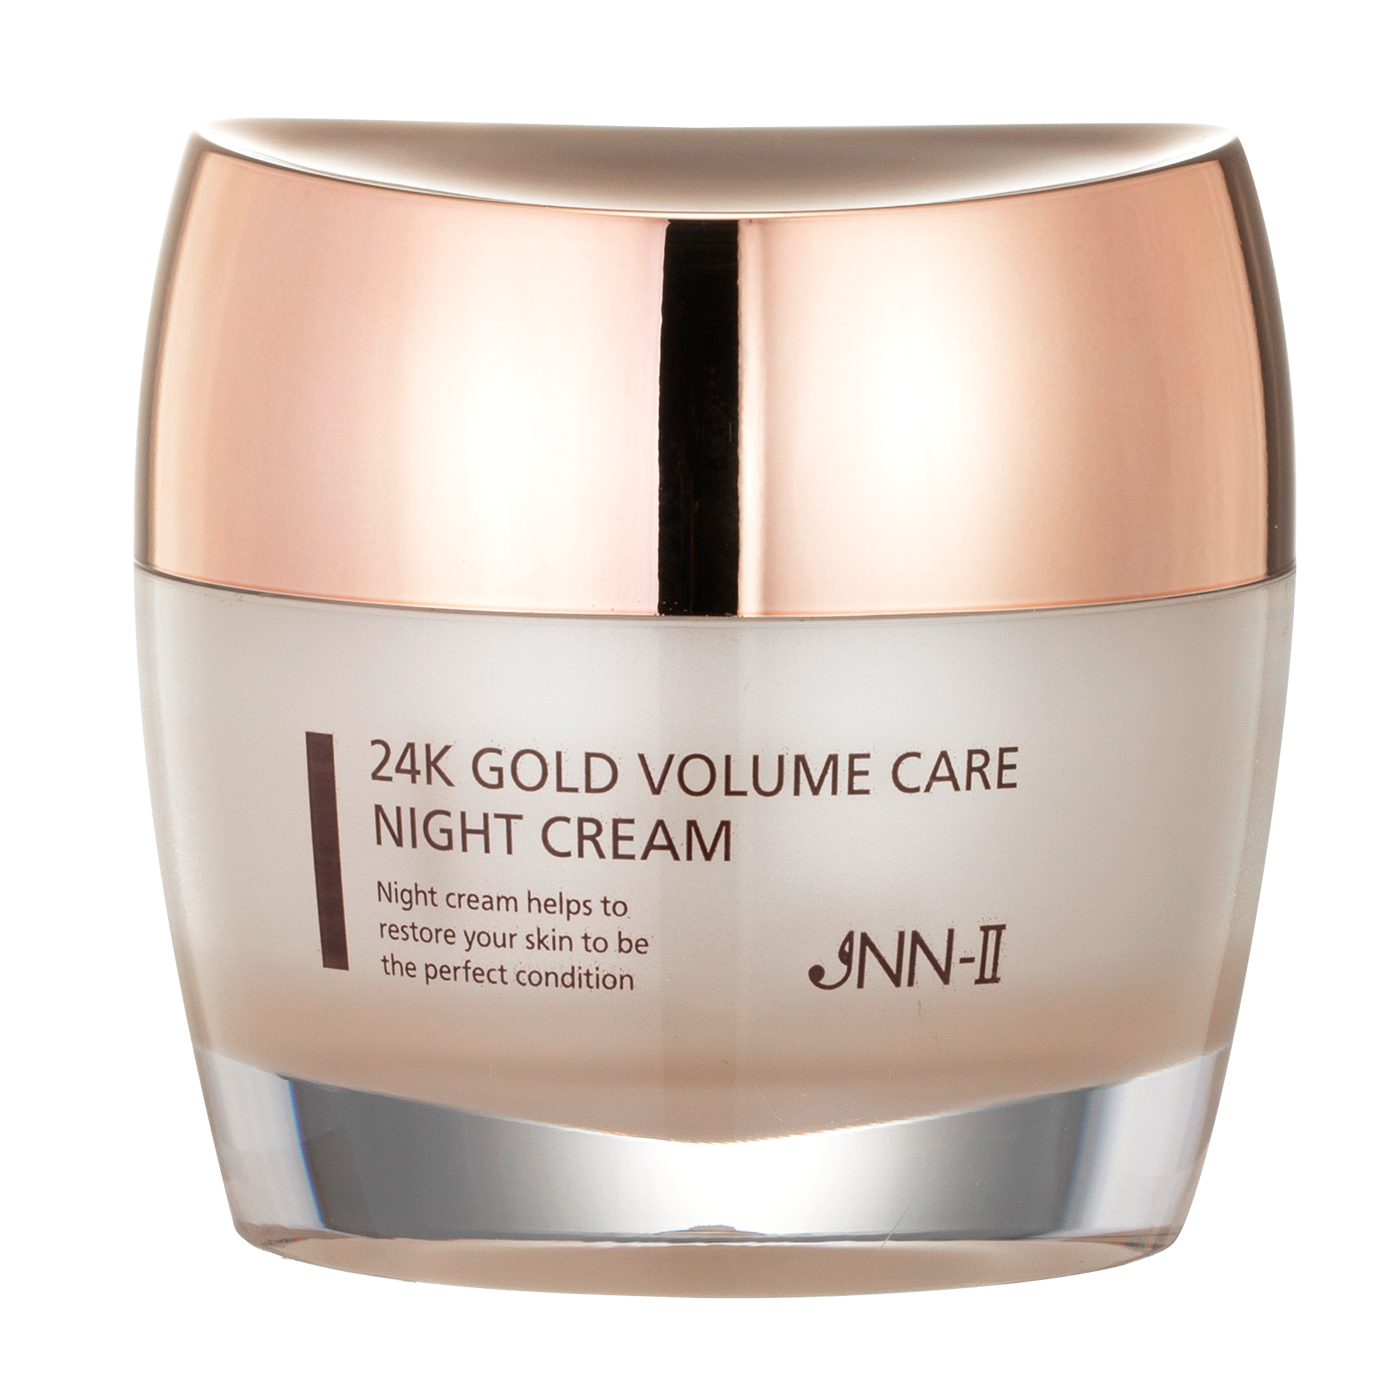 J.N.To 24k Gold Volume Care Night Cream 50g / Phục hồi điều kiện da